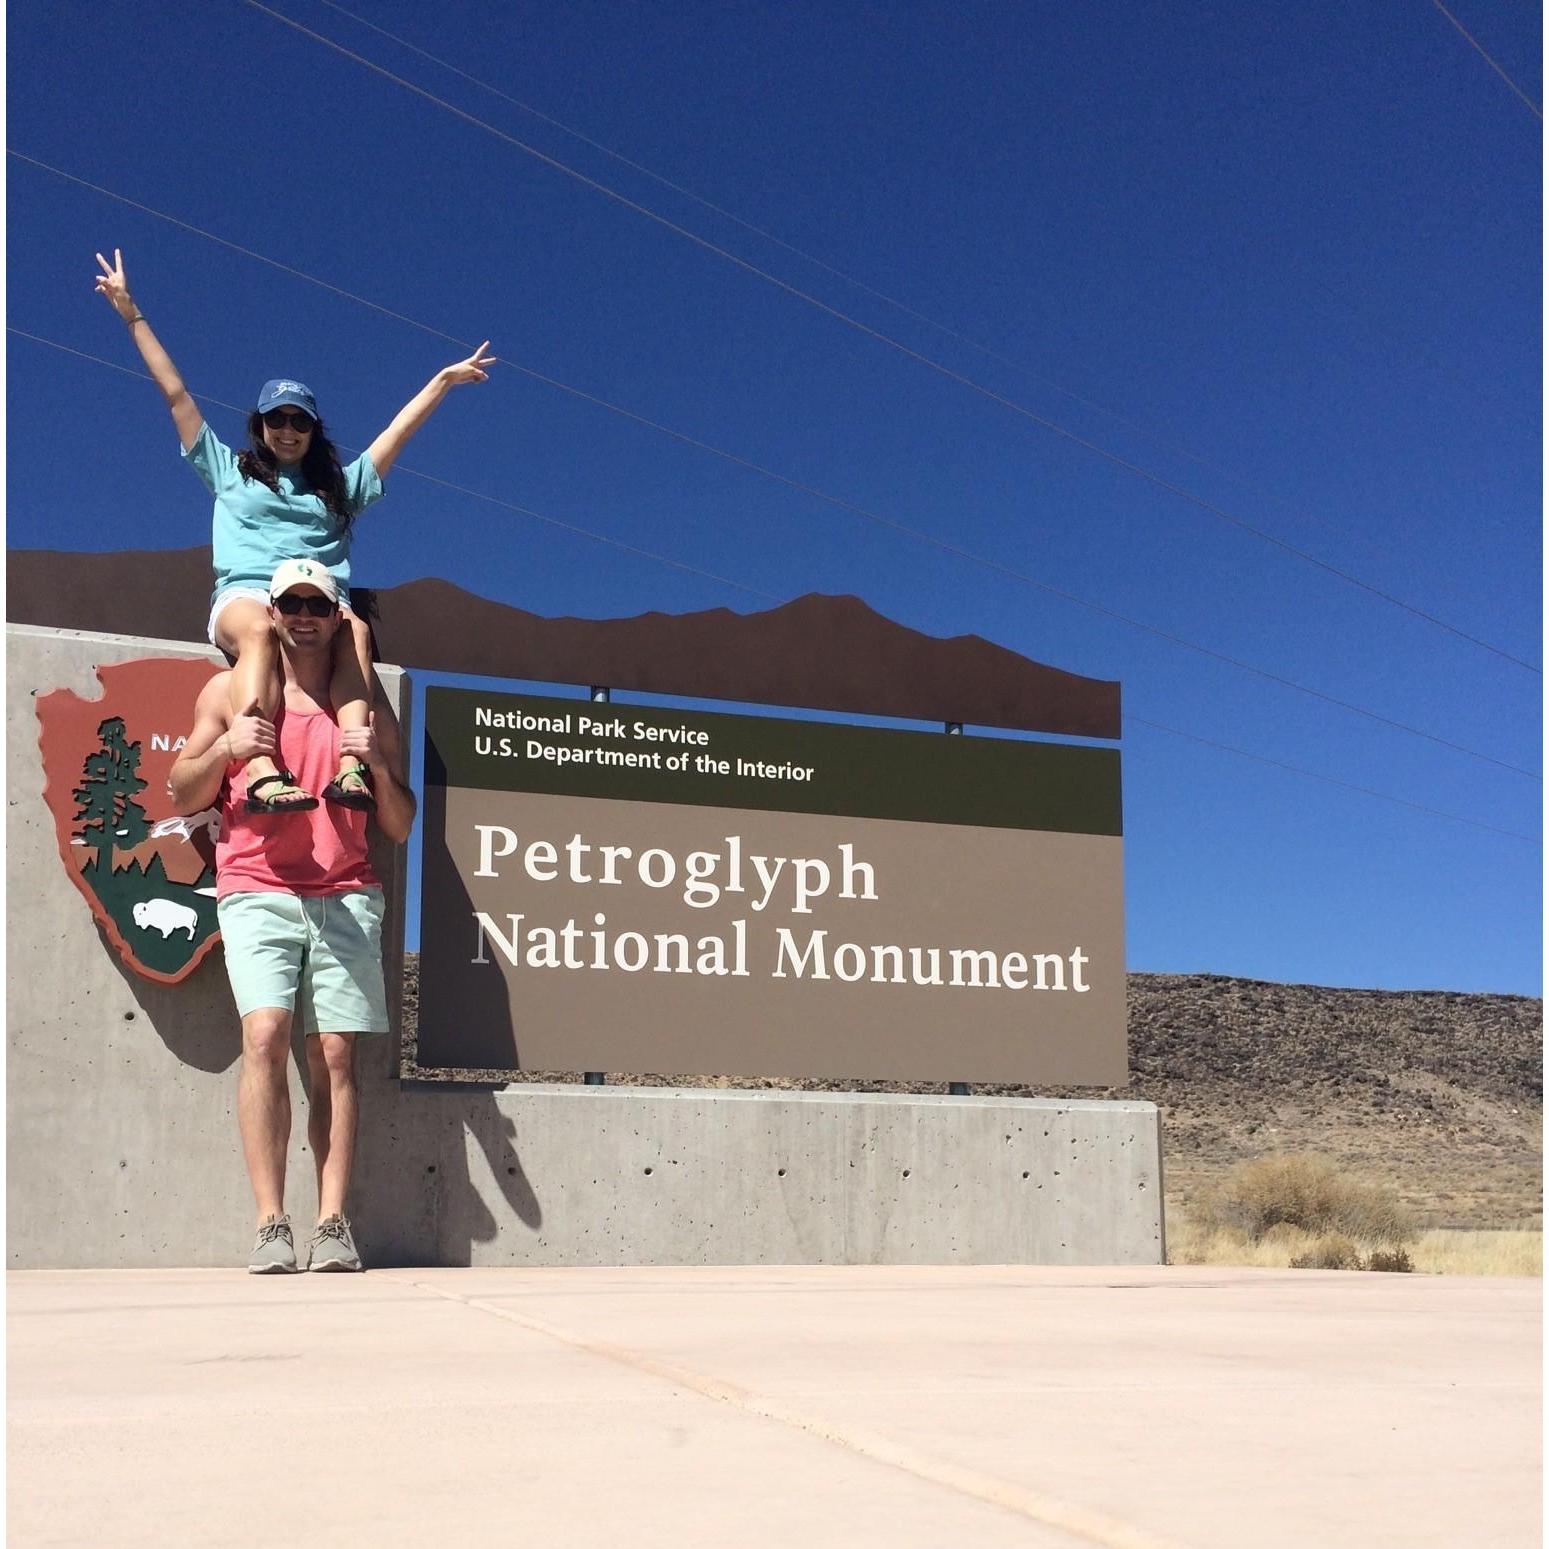 Petroglyph National Monument in Albuquerque